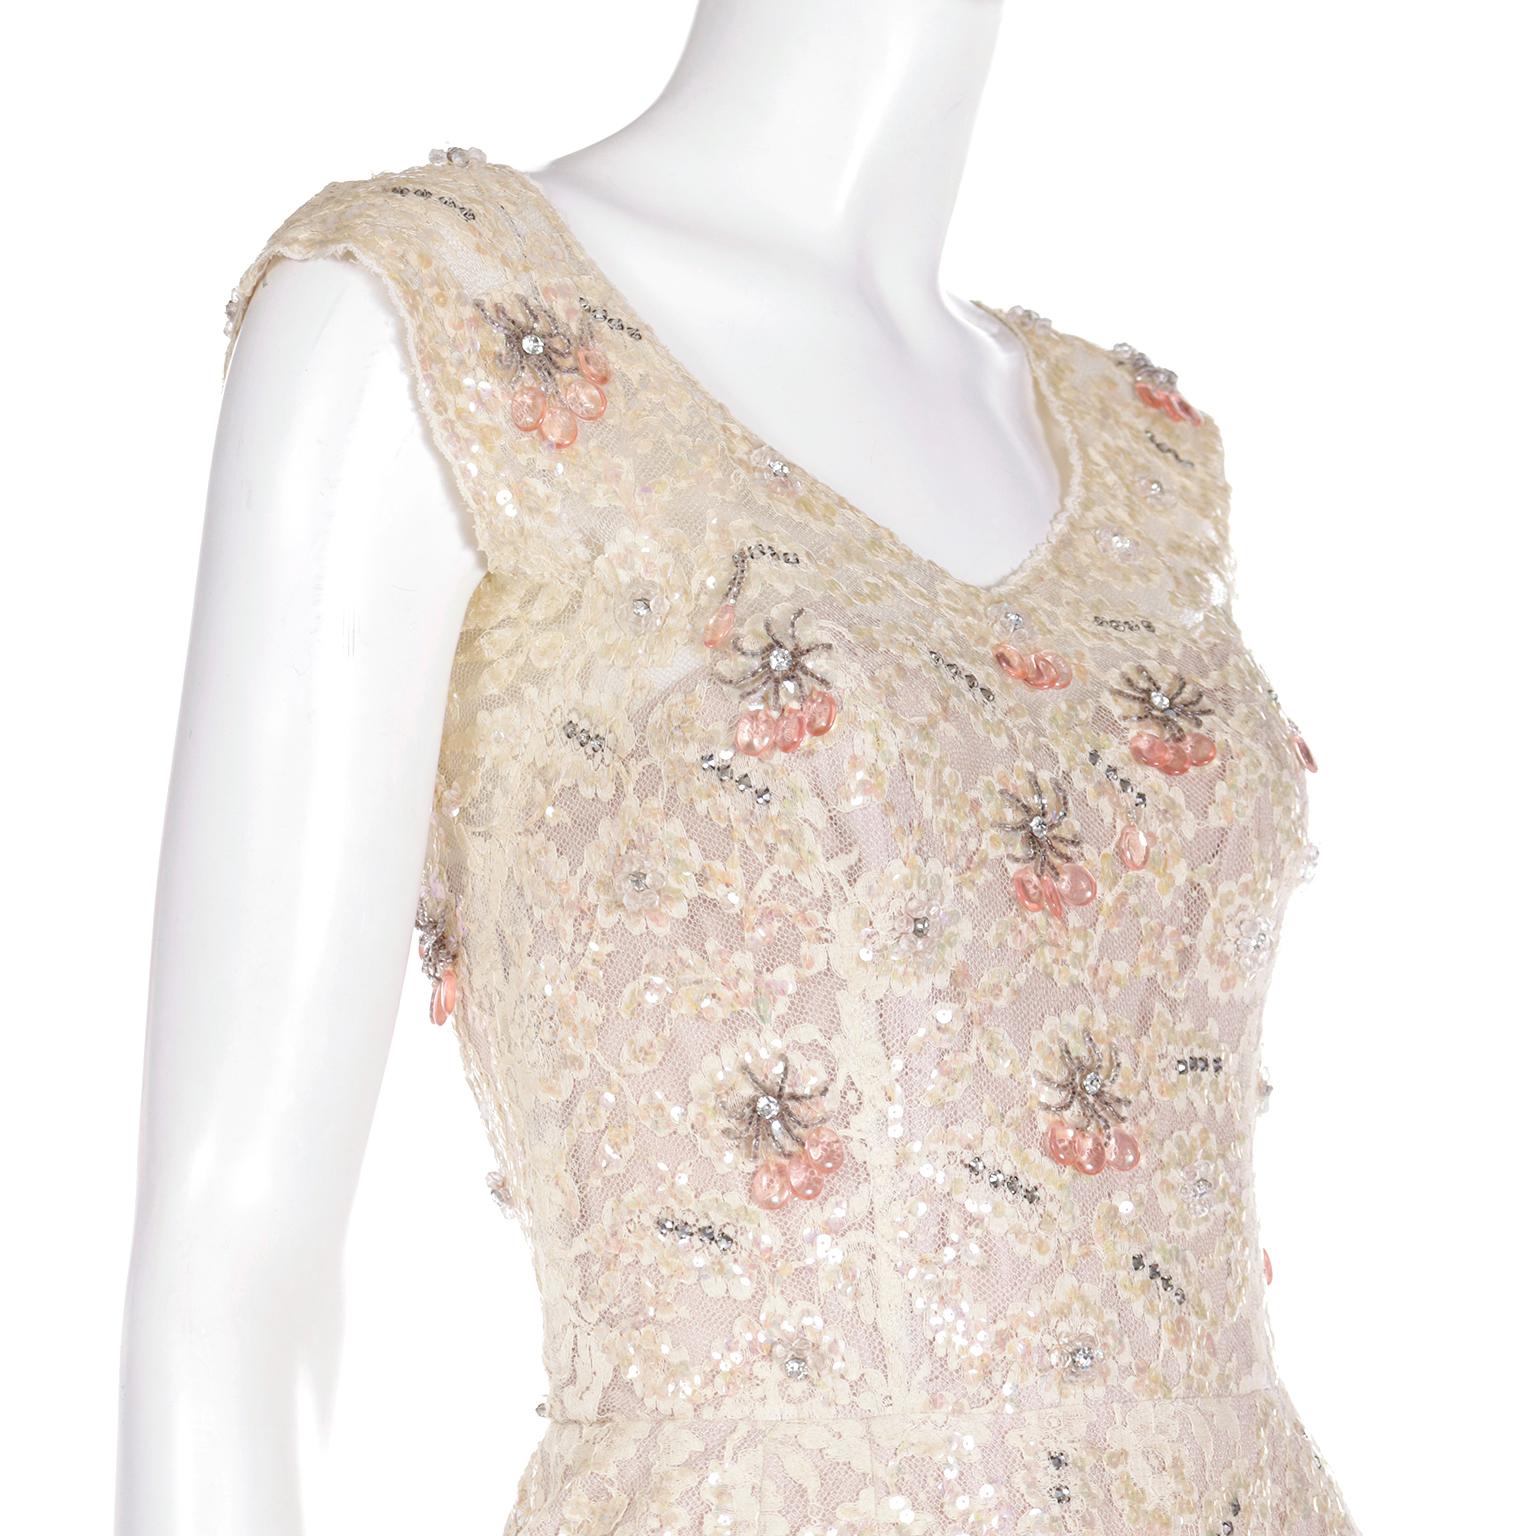 Harvey Berin Karen Stark 1950's Lace Beaded Evening Dress w Sequin & Rhinestones For Sale 2